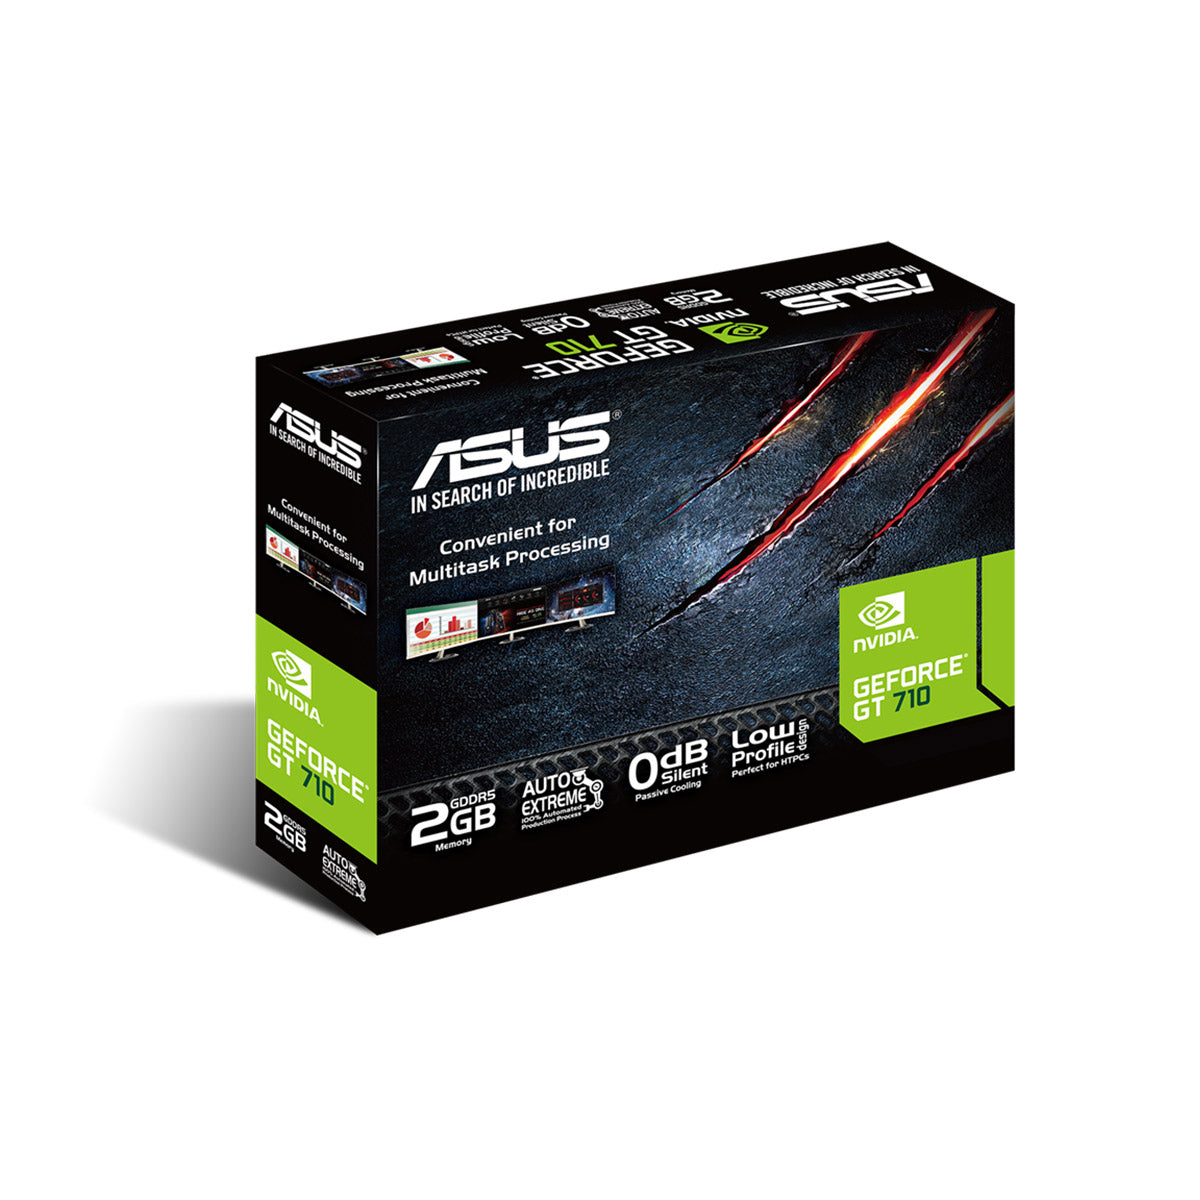 [पुन: पैक किया गया] ASUS GeForce GT710 2GB GDDR5 64-बिट ग्राफिक्स कार्ड 0db लो प्रोफाइल के साथ